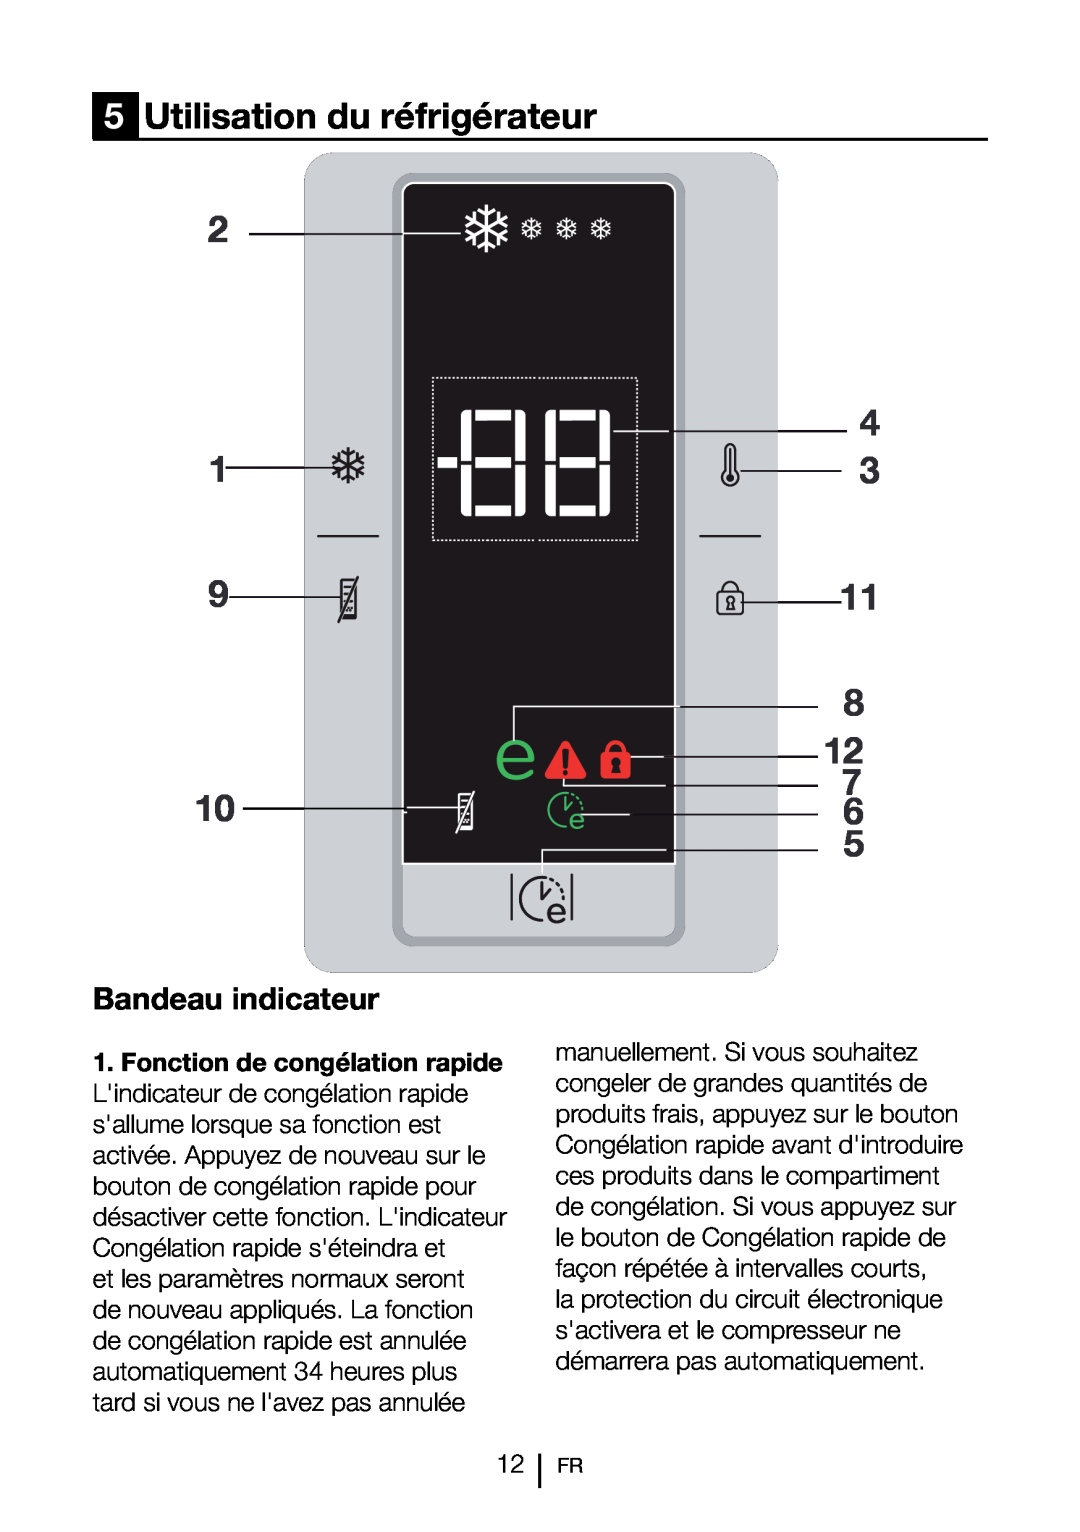 Blomberg FNT 9681 A+ 5Utilisation du réfrigérateur, 911 8 12 7 10 5, Bandeau indicateur, Fonction de congélation rapide 